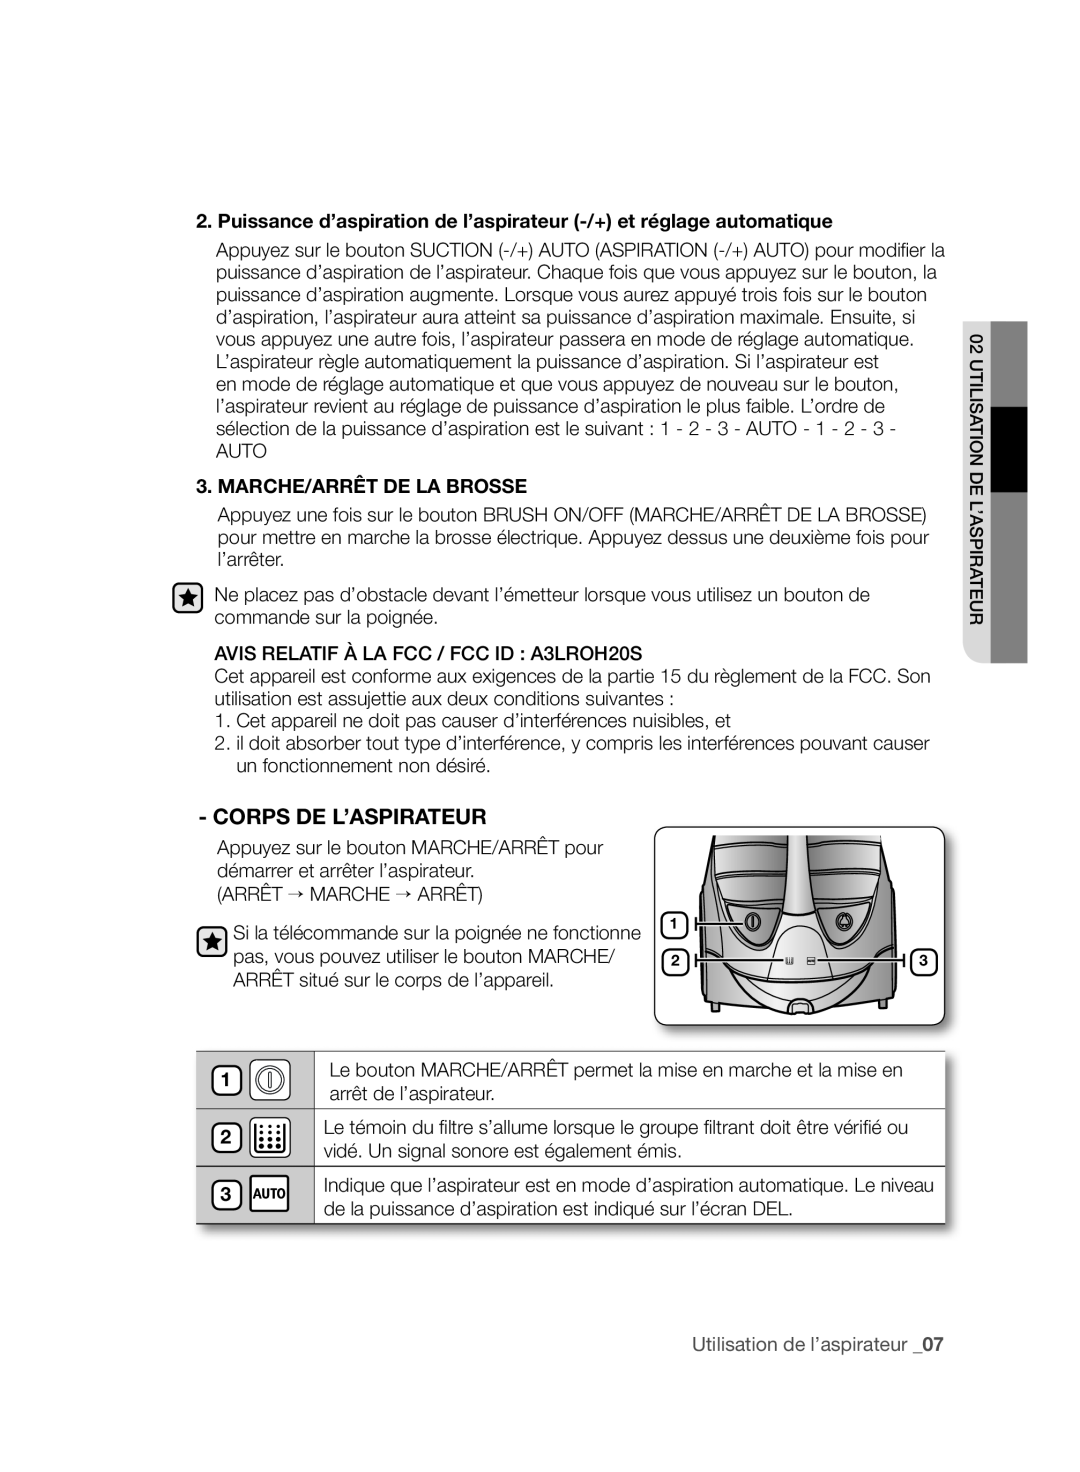 Samsung VCC96P0H1G user manual Corps De L’Aspirateur, Marche/Arrêt De La Brosse, 1 2, Utilisation de l’aspirateur 